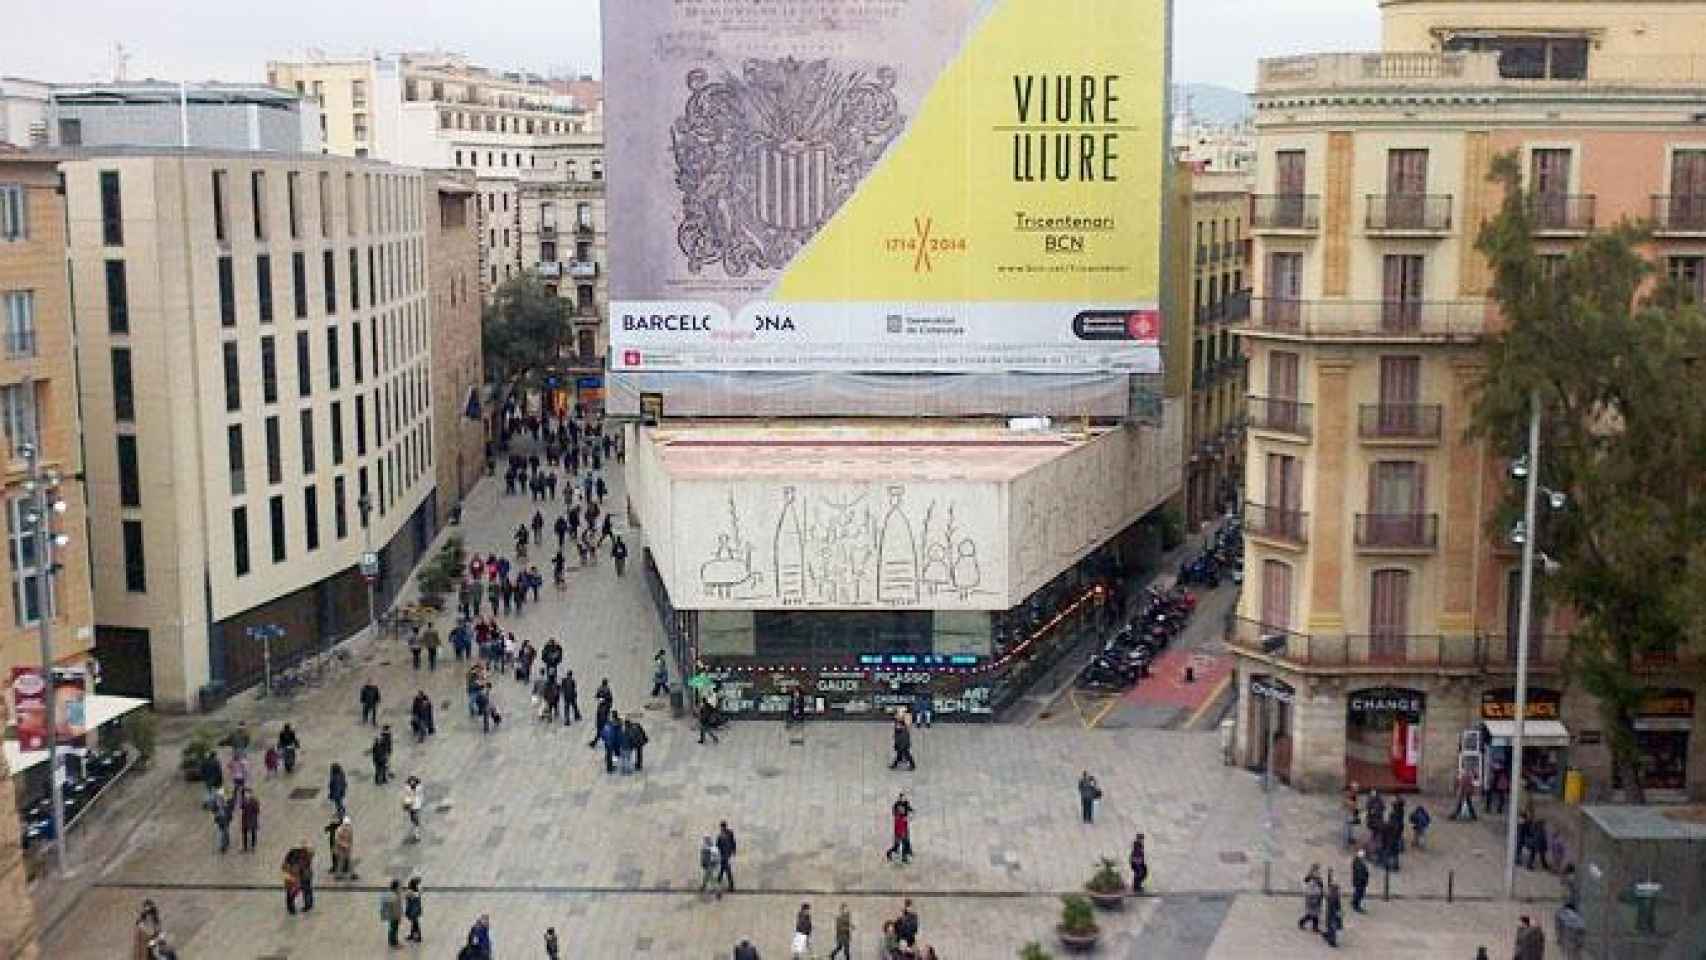 Sede del Colegio d'Arquitectes de Catalunya (Coac) en Barcelona con un anuncio oficial independentista / CG